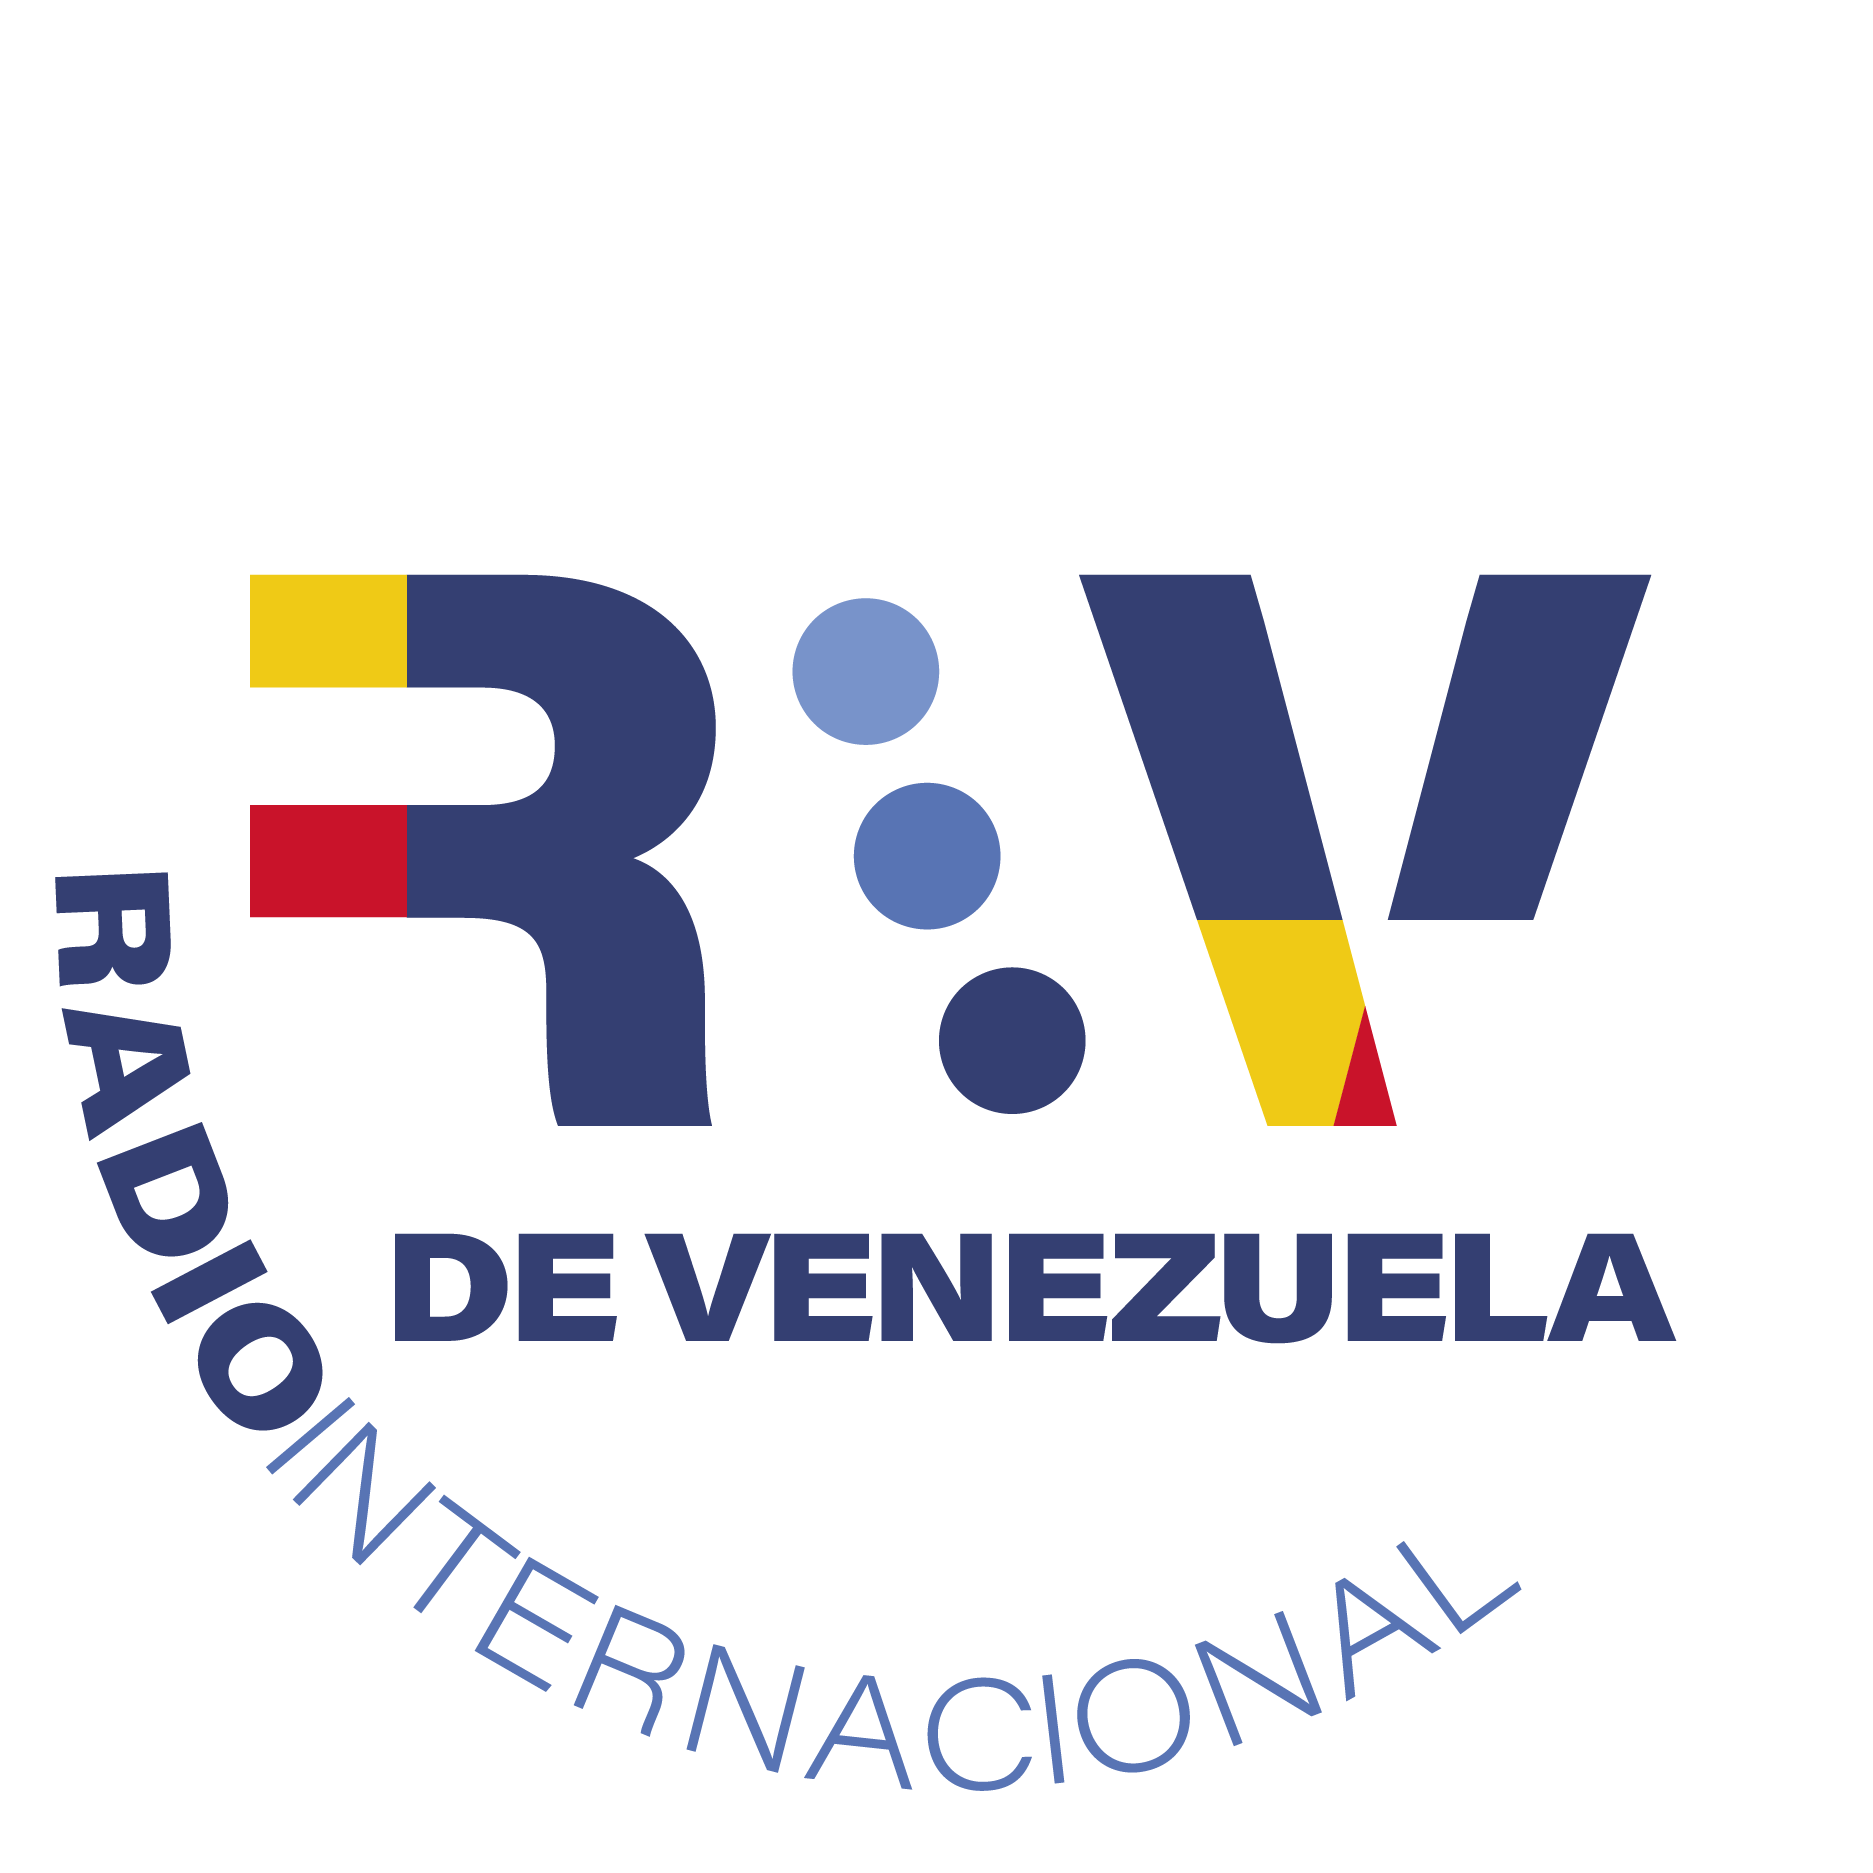 Radio Internacional de Venezuela